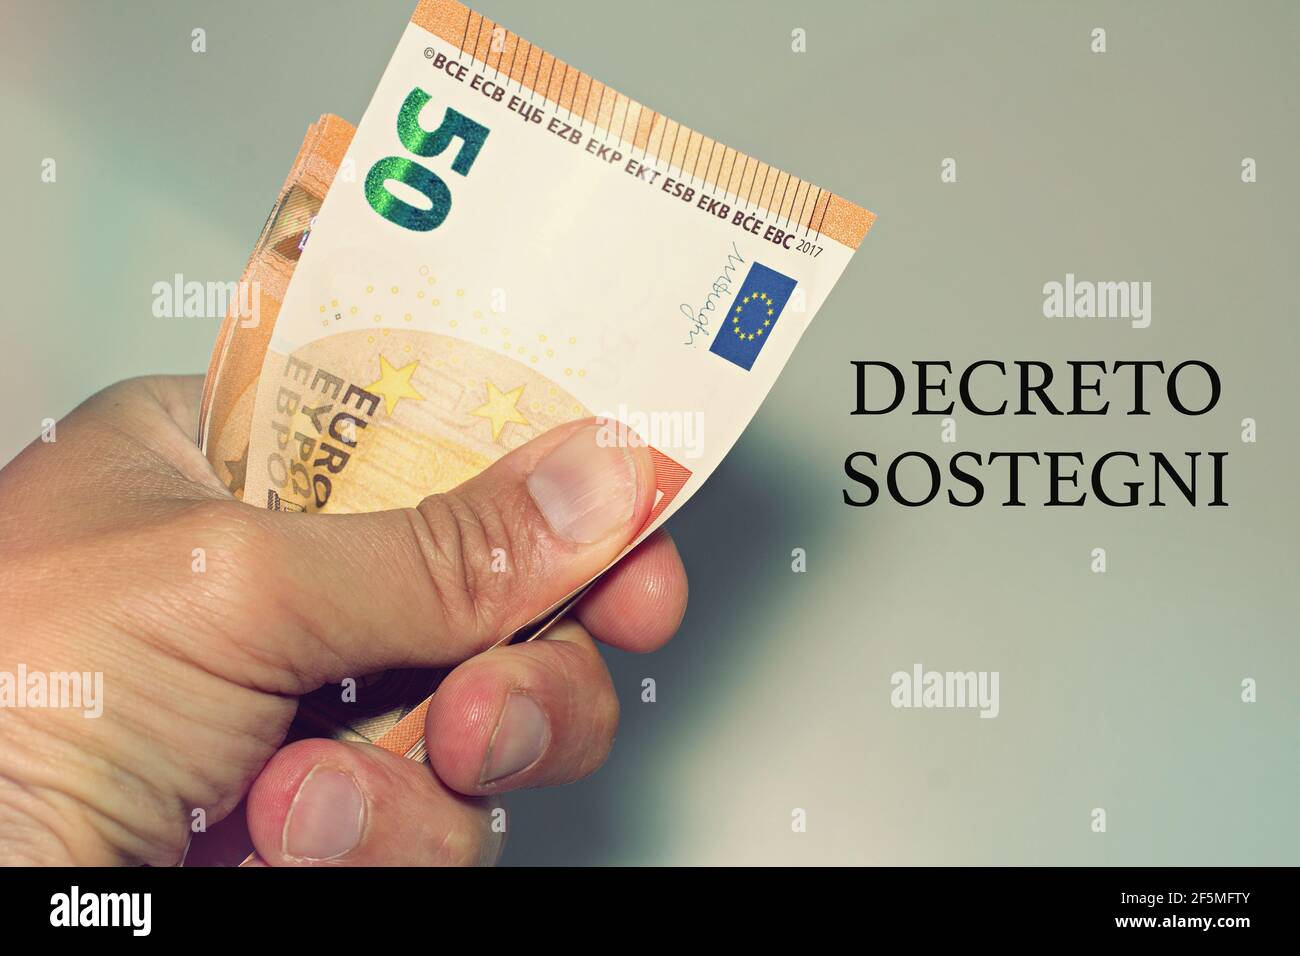 Tenir à la main des billets avec le signe 'Defreto Sostegni' traduit dans l'aide financière. Incitation du gouvernement italien. Banque D'Images